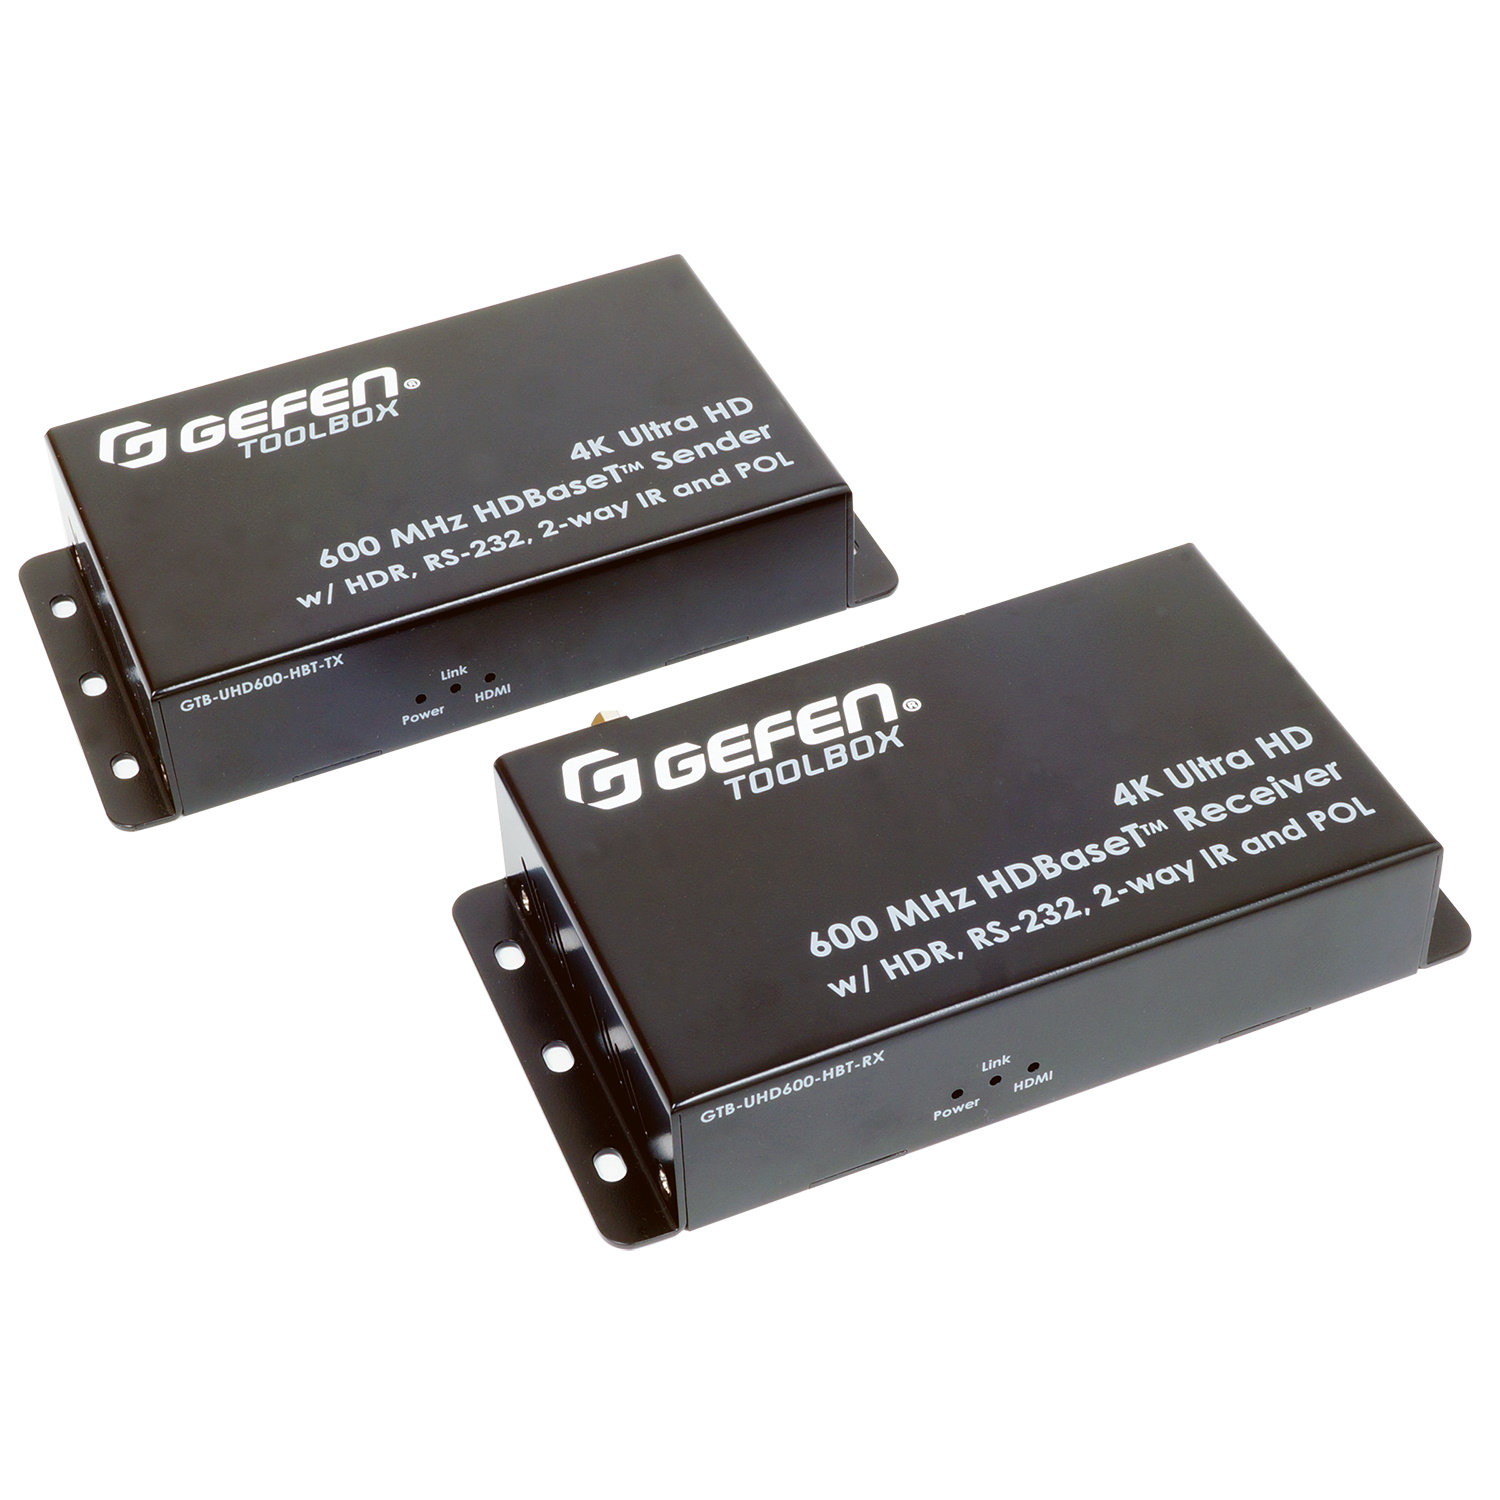 HDMI коммутаторы, разветвители, повторители Gefen GTB-UHD600-HBT hdmi коммутаторы разветвители повторители dr hd mr 125 hd